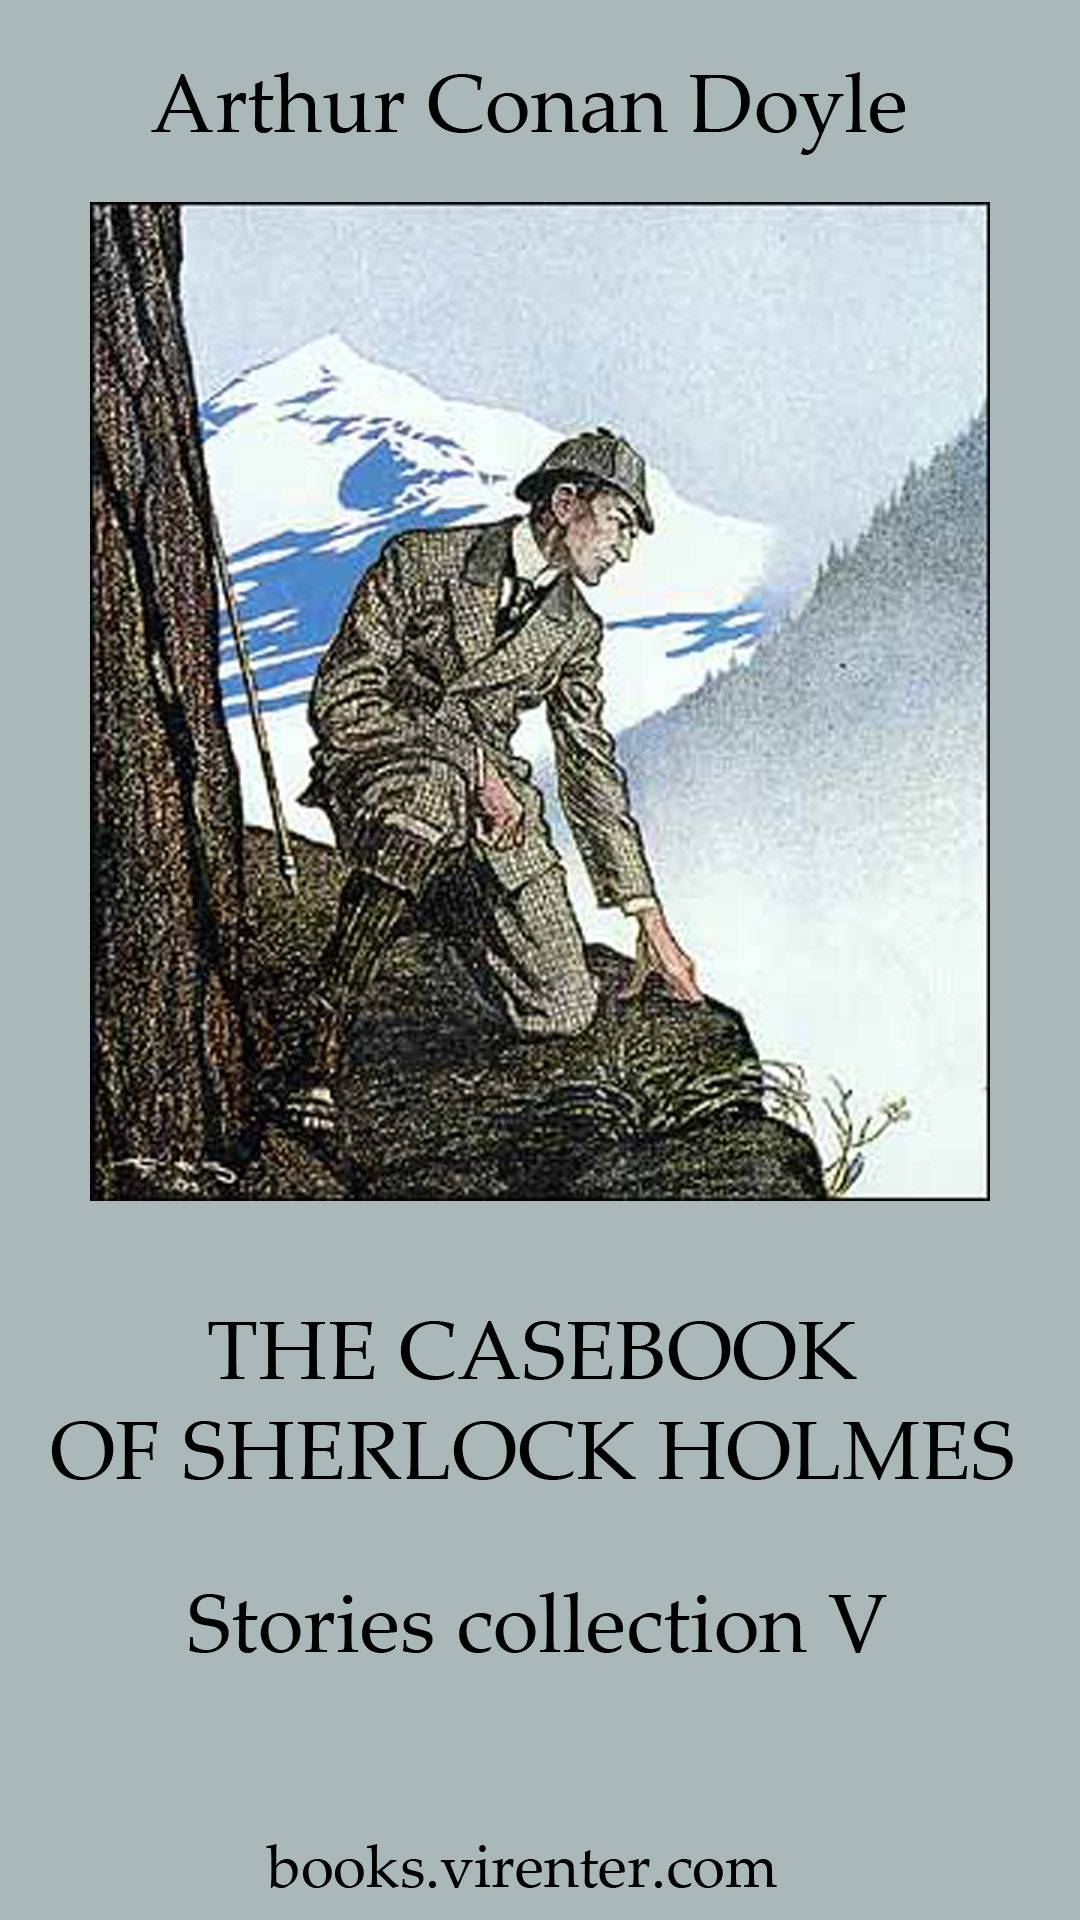 Arthur Conan Doyle - THE CASEBOOK OF SHERLOCK HOLMES